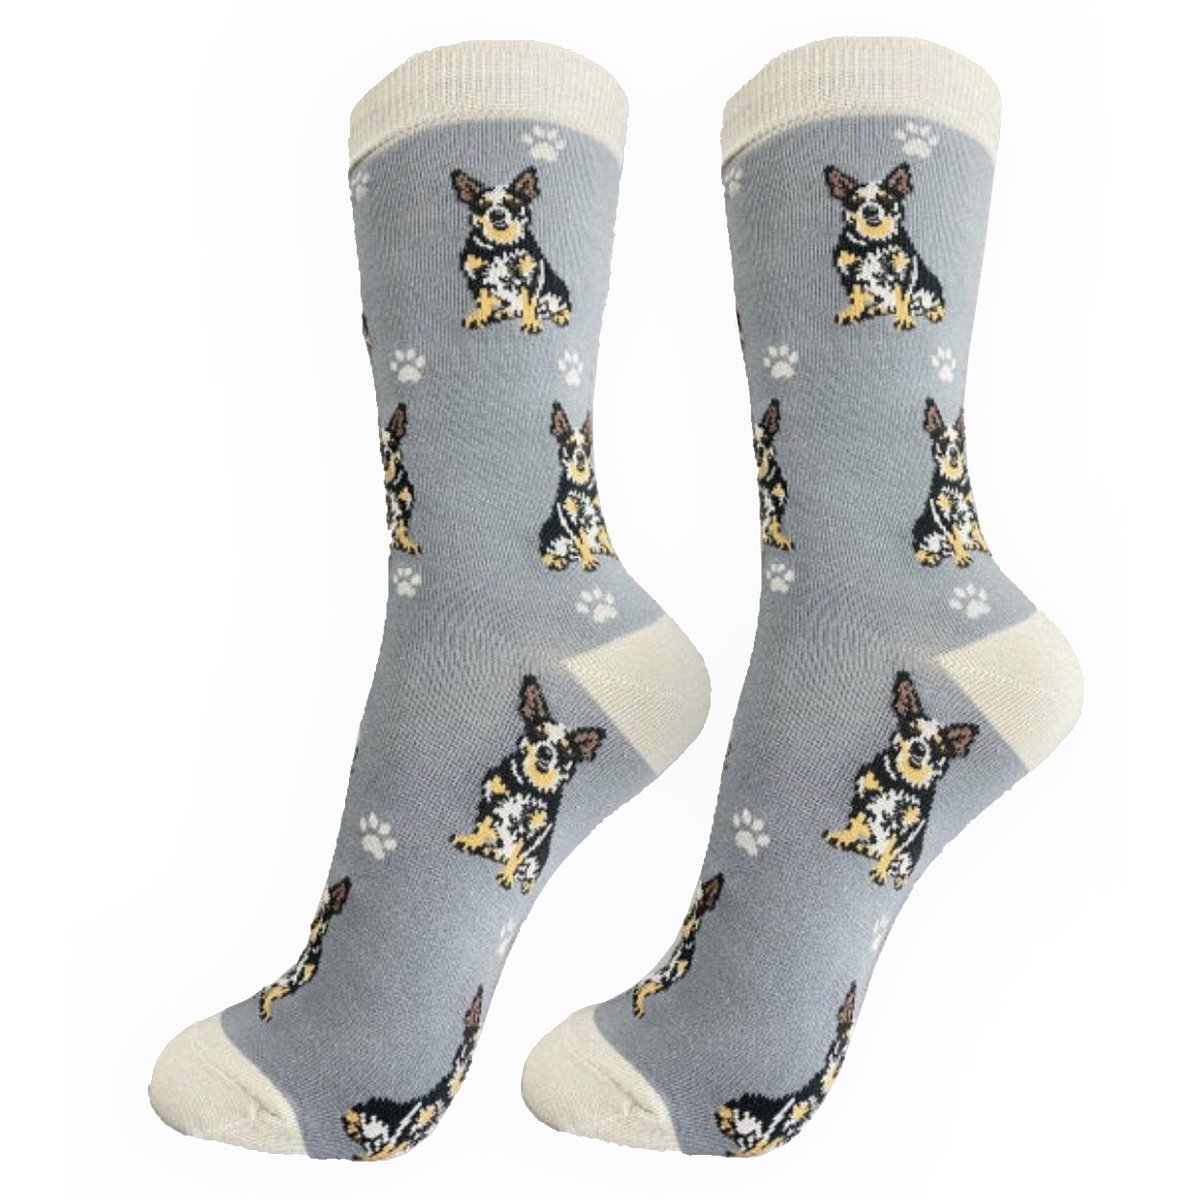 Australian Cattle Dog Socks